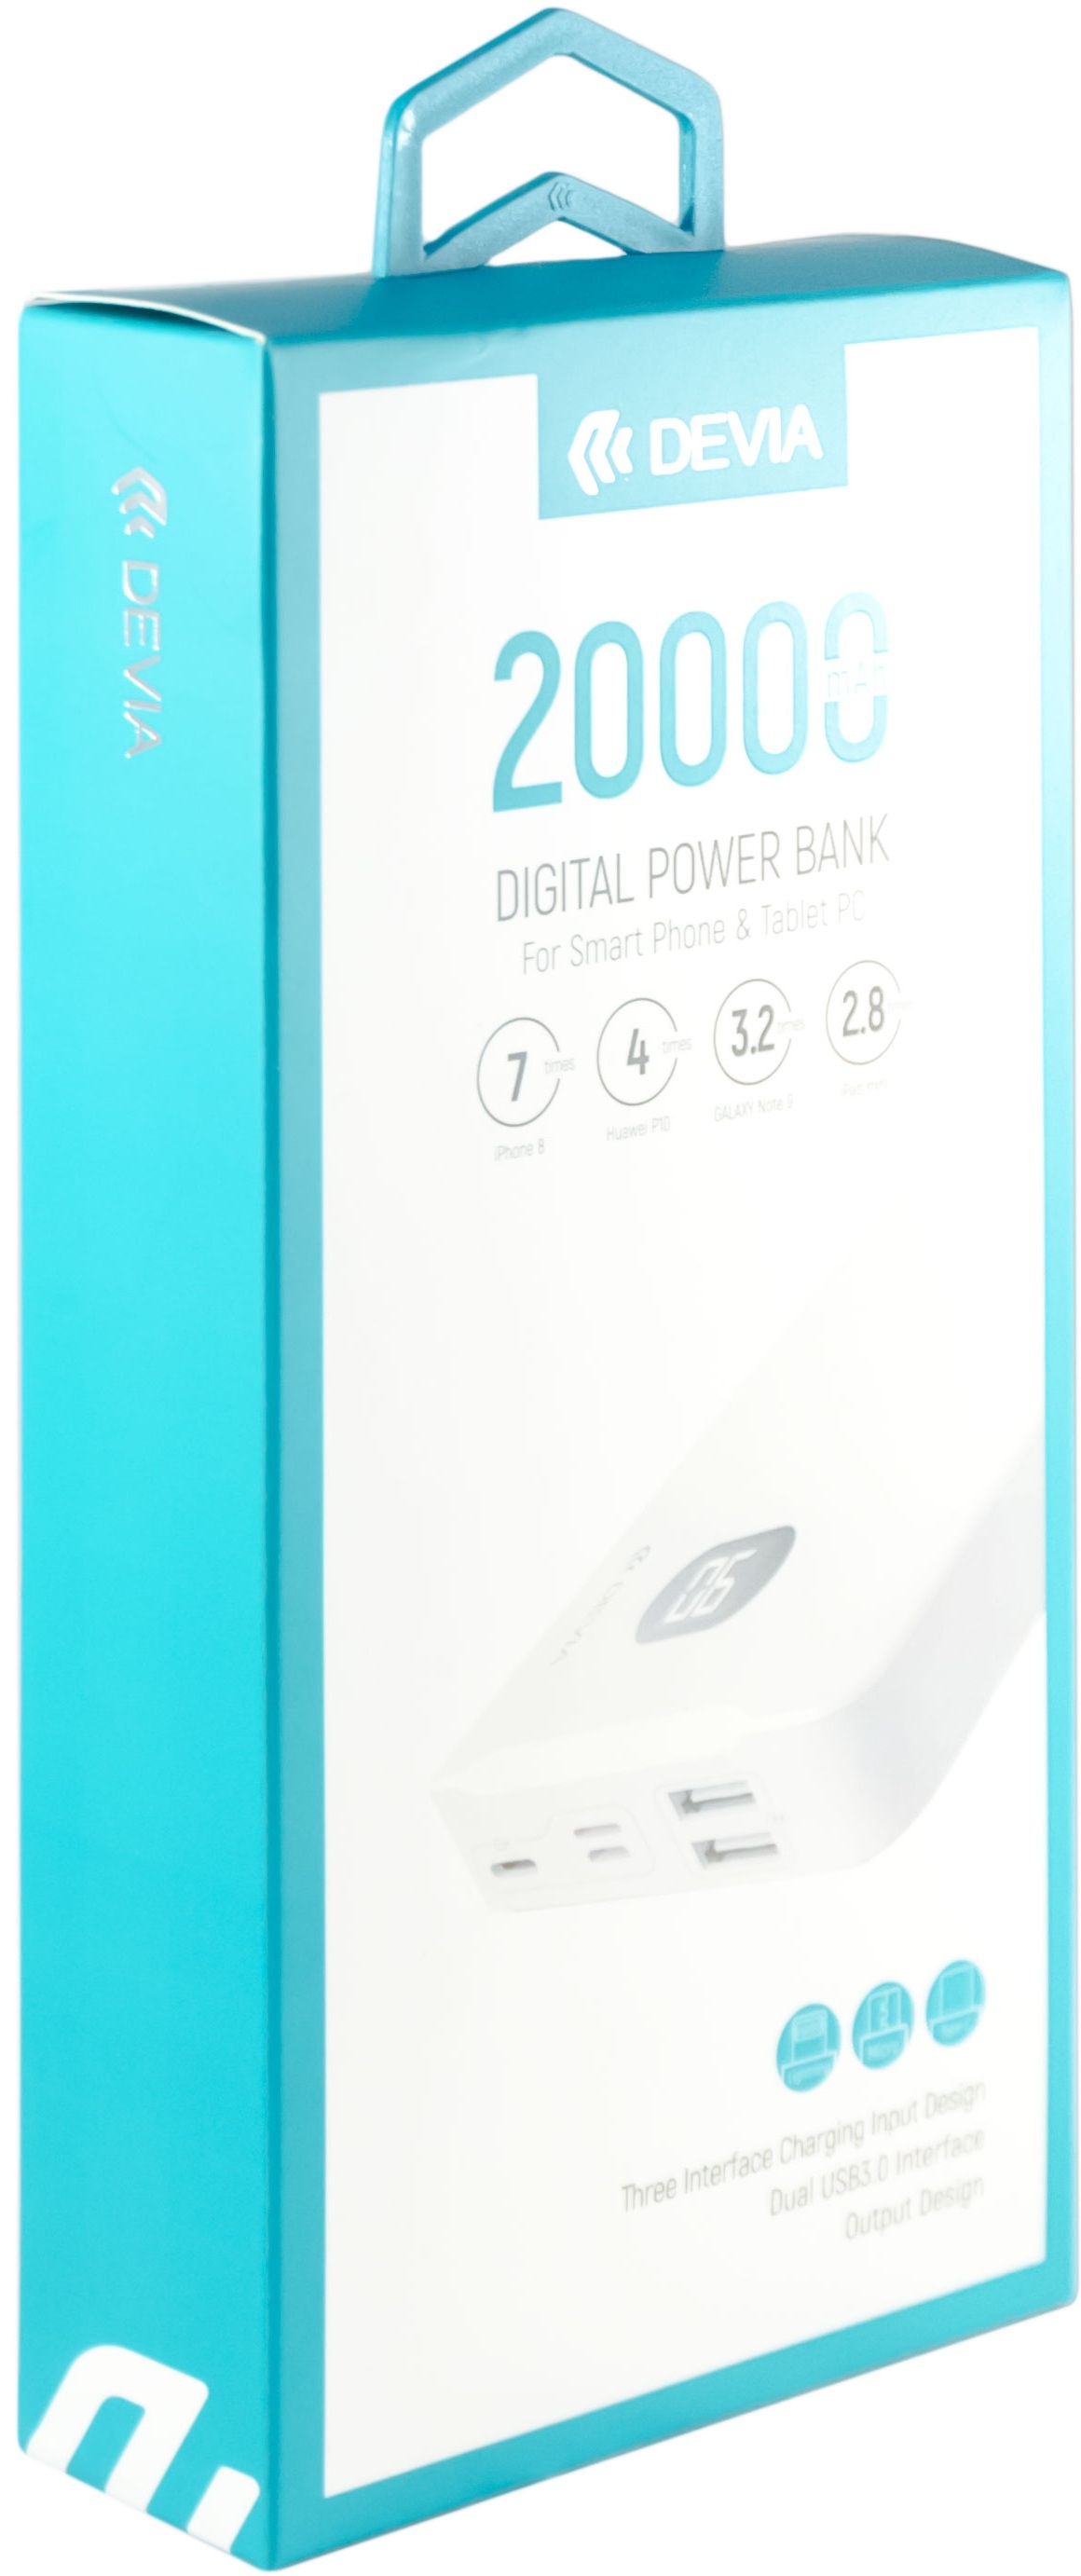 Devia Digital Power Bank, 20000mah